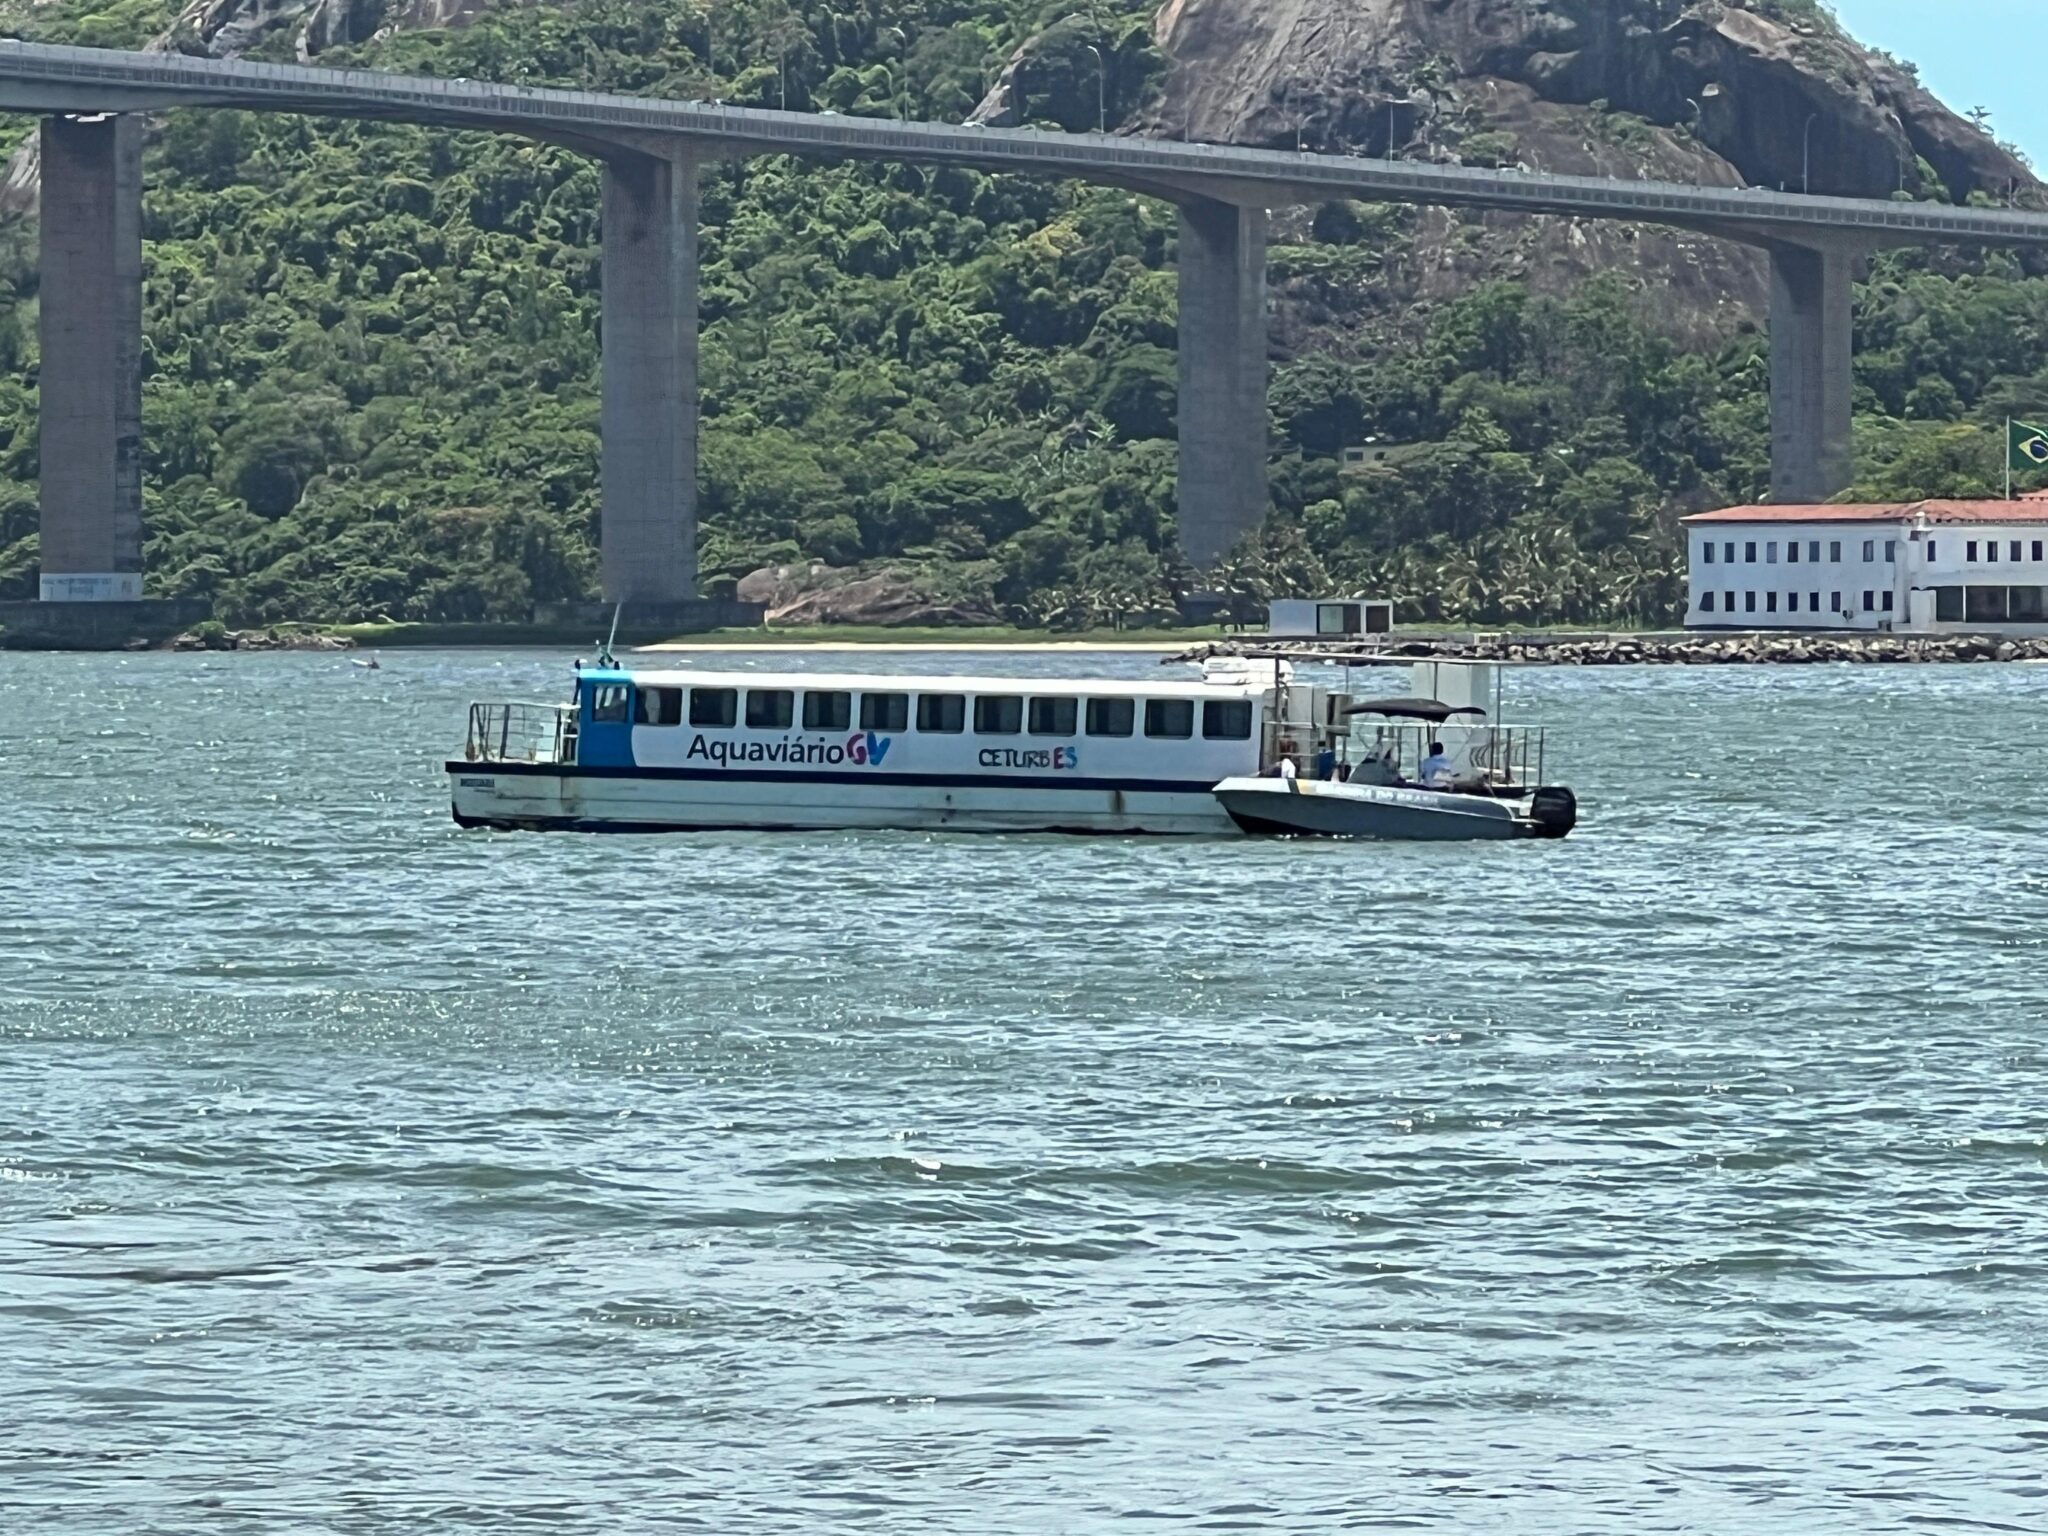 Lancha da Capitania dos Portos auxilia a embarcação do Aquaviário